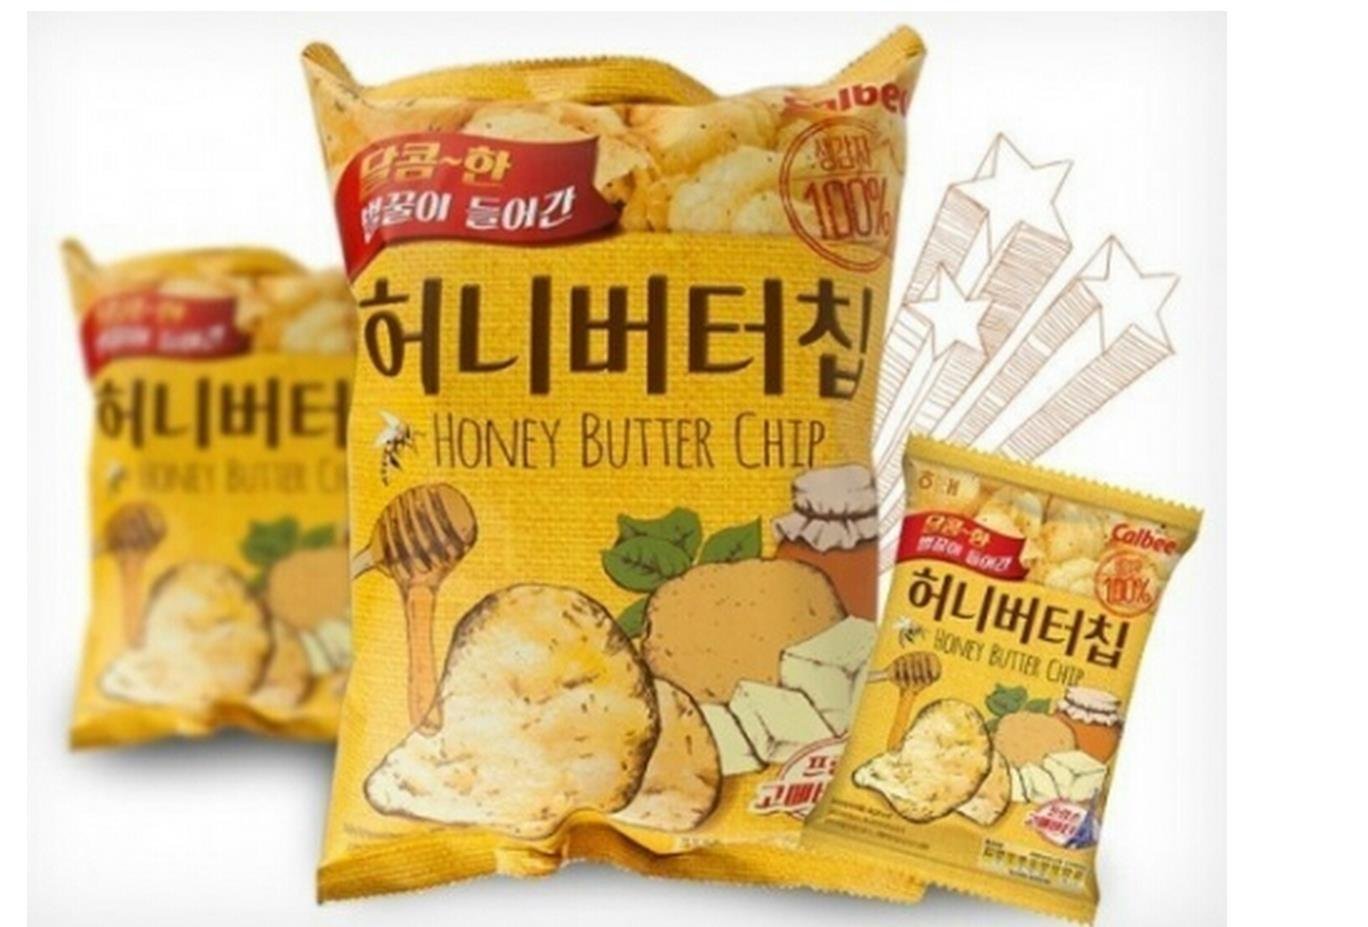 Honey Butter Chips (해태제과 허니버터칩)